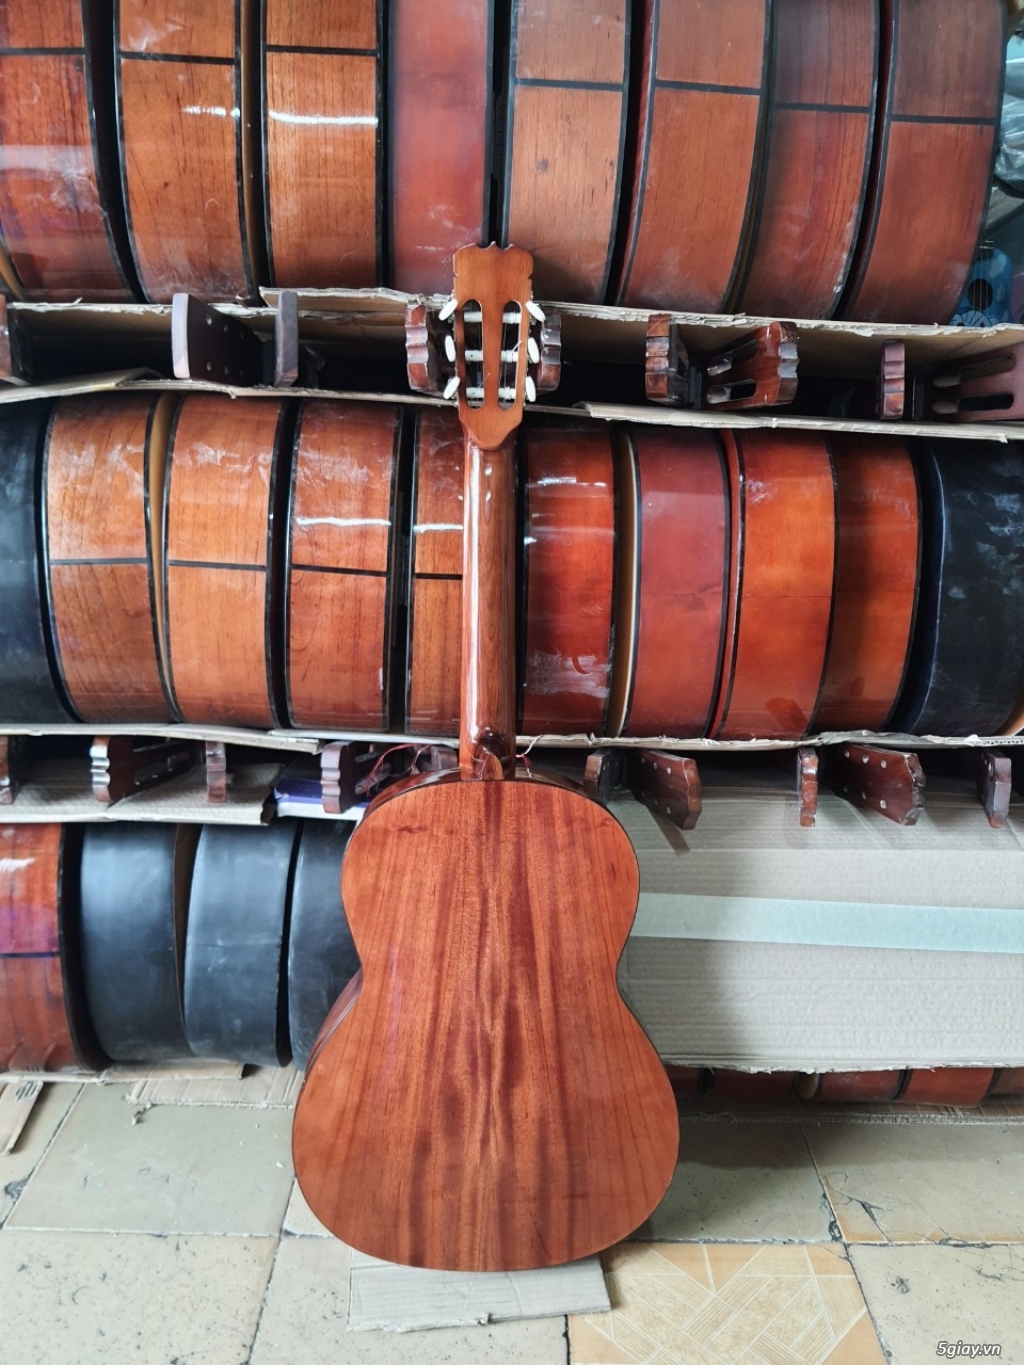 Bán đàn guitar, ukulele, kalimba giá rẻ ở quận Gò Vấp TPHCM - 4